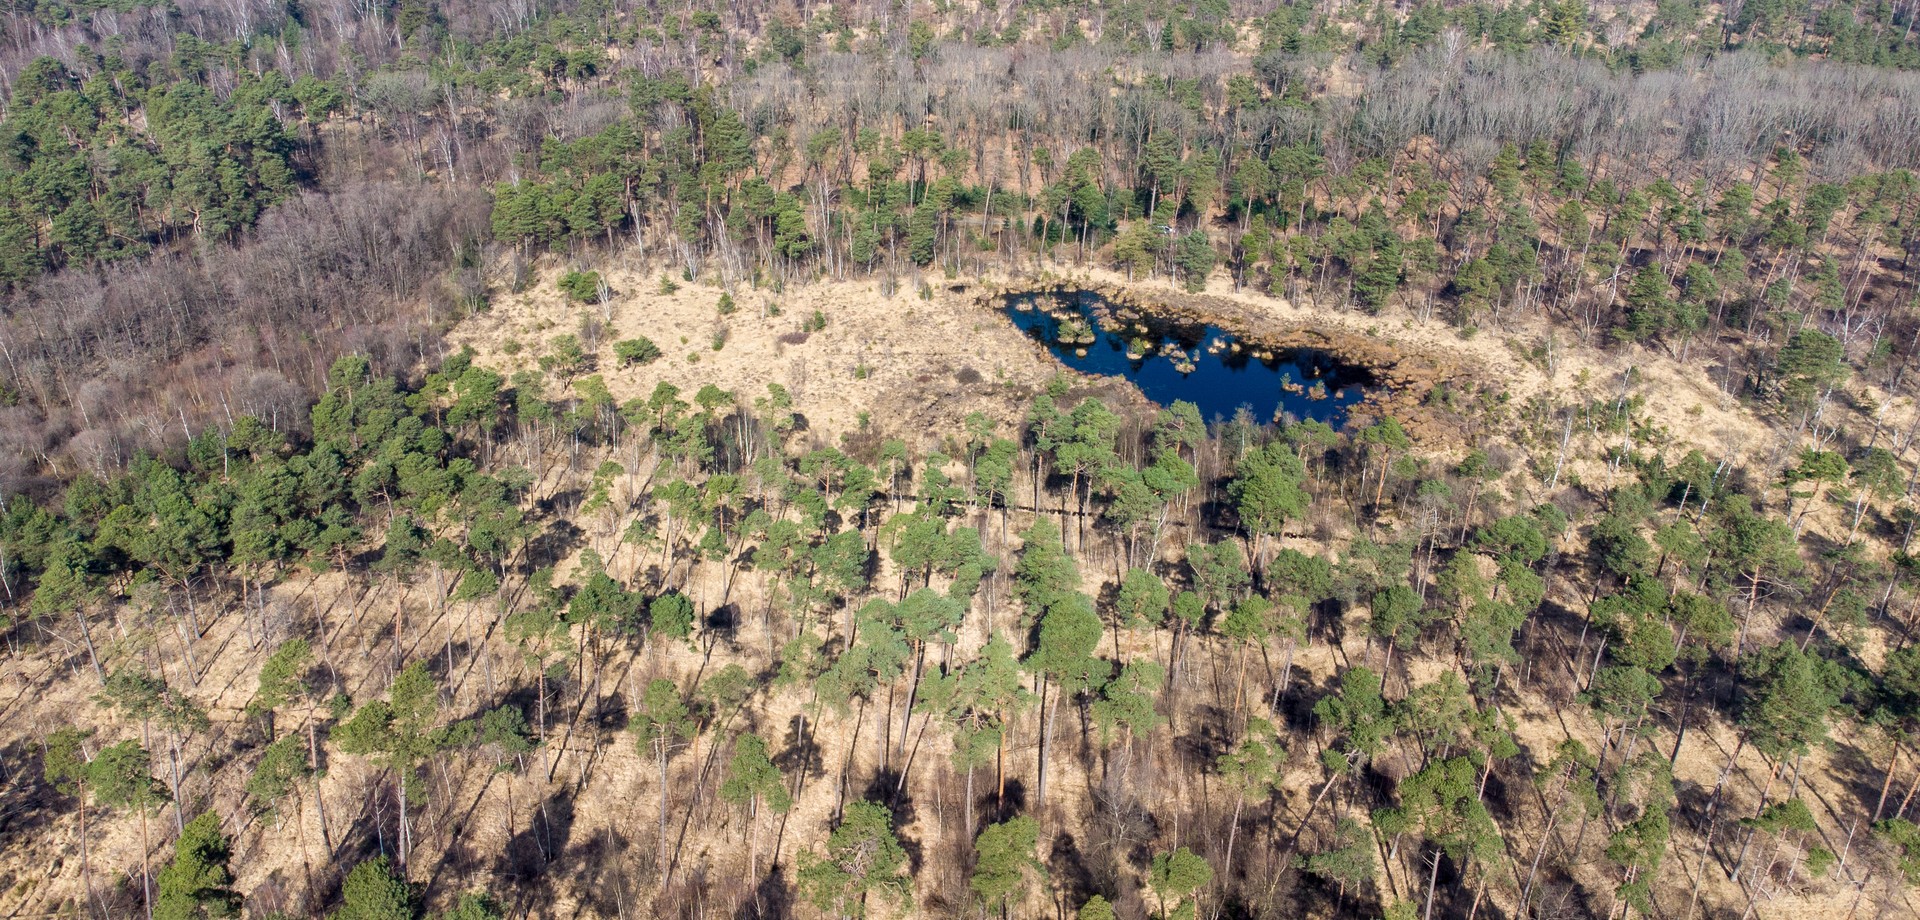 Lüntener Wald im Forstgut Ammeloe aus der Vogelperspektive. Foto: LWL/Kriegs